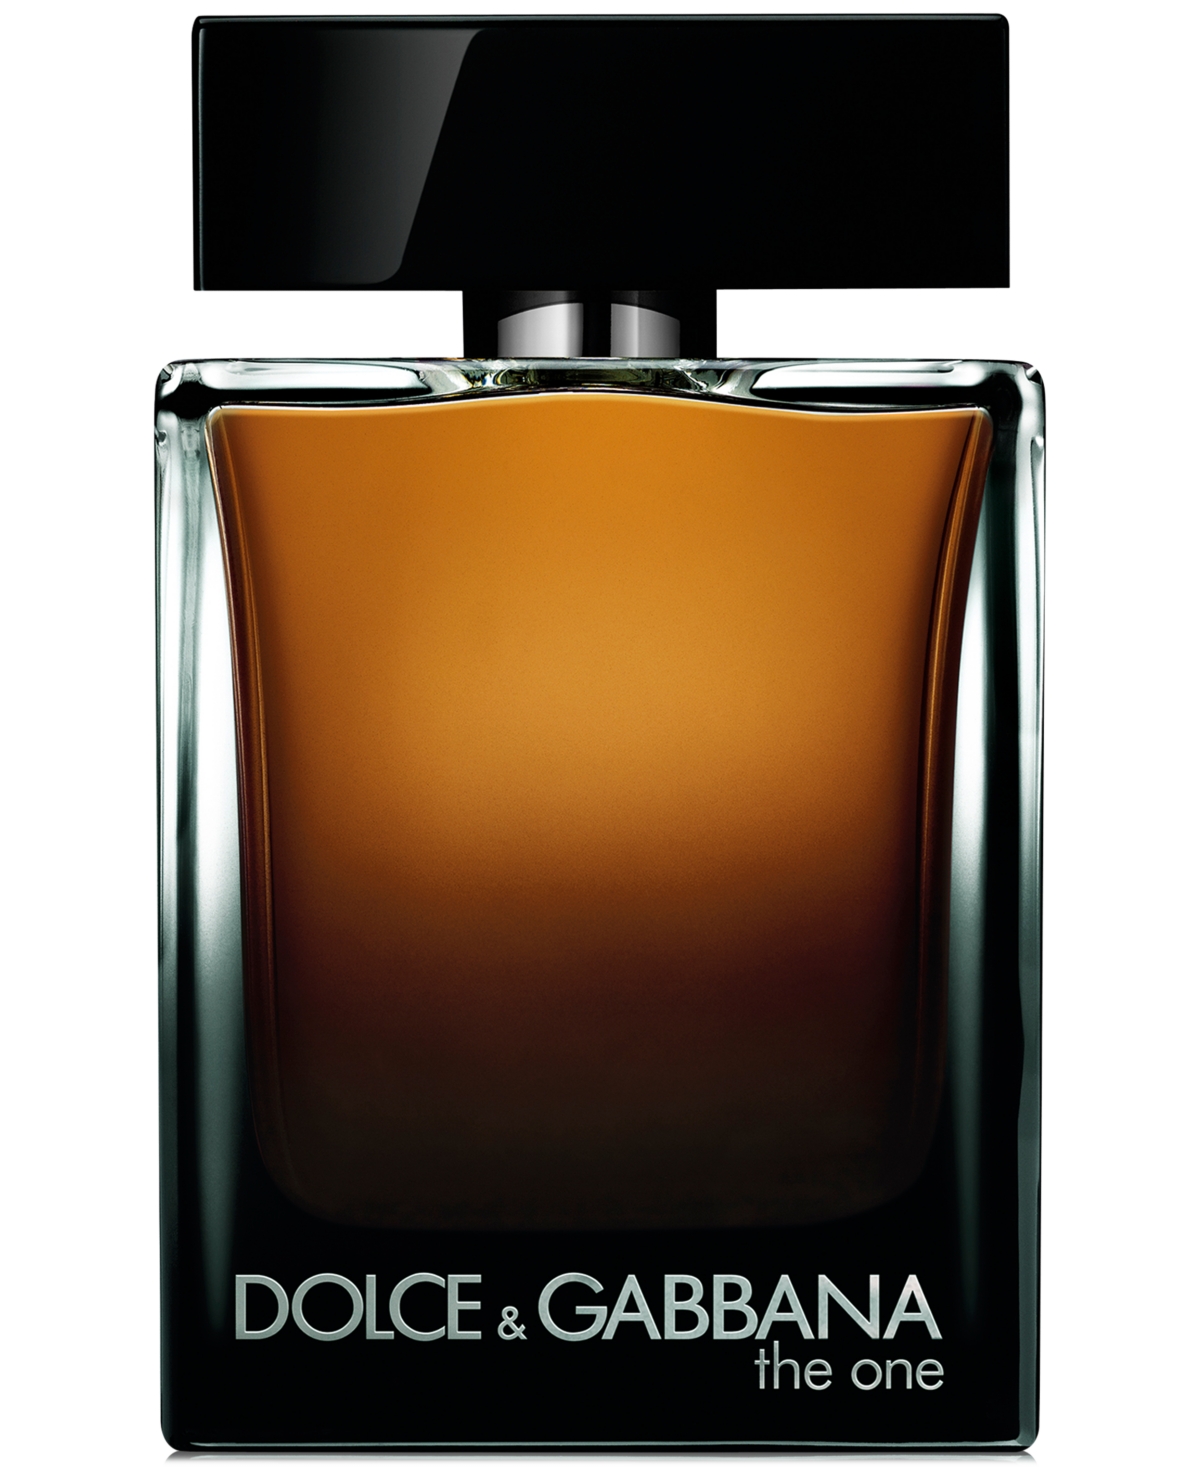 Dolce&Gabbana Men's The One for Men Eau de Parfum Spray, 3.3 oz.